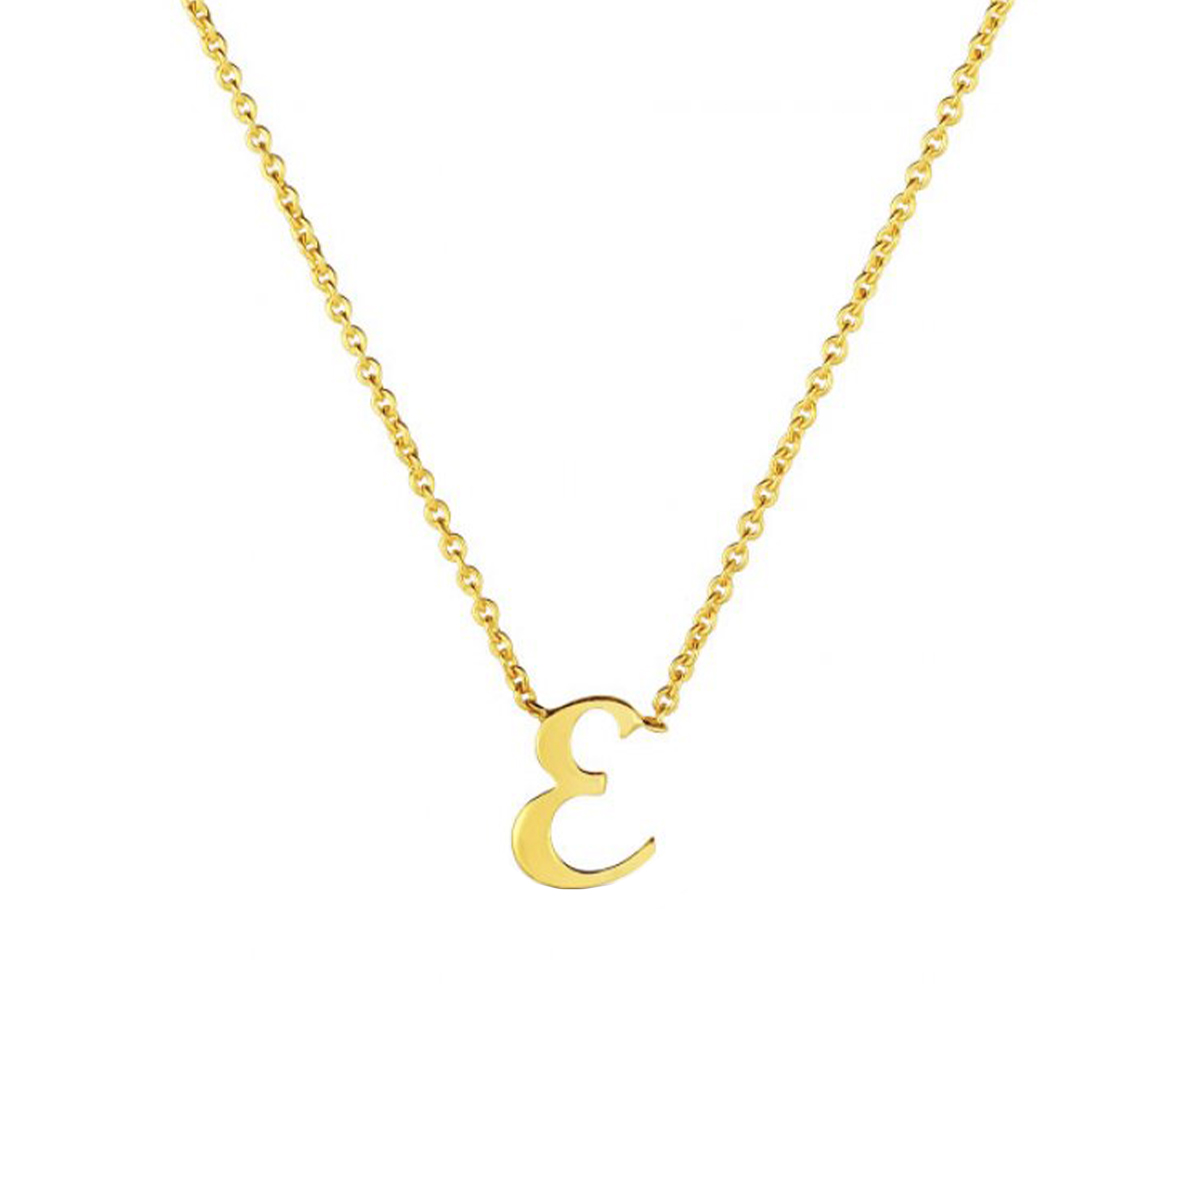 18K Yellow Gold Small Script "E" Pendant with Chain